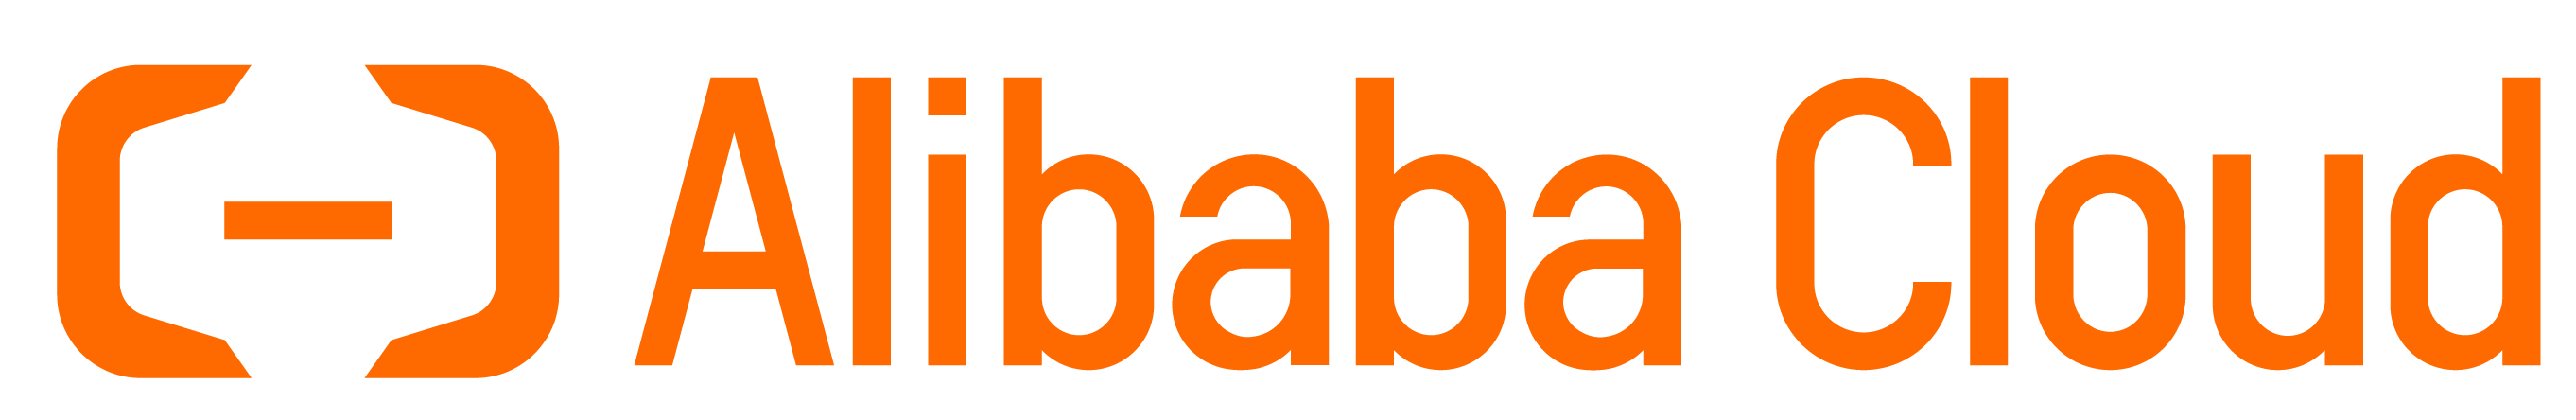 Alibaba AliCloud - Alibaba Cloud - Alibaba Cloud Computing